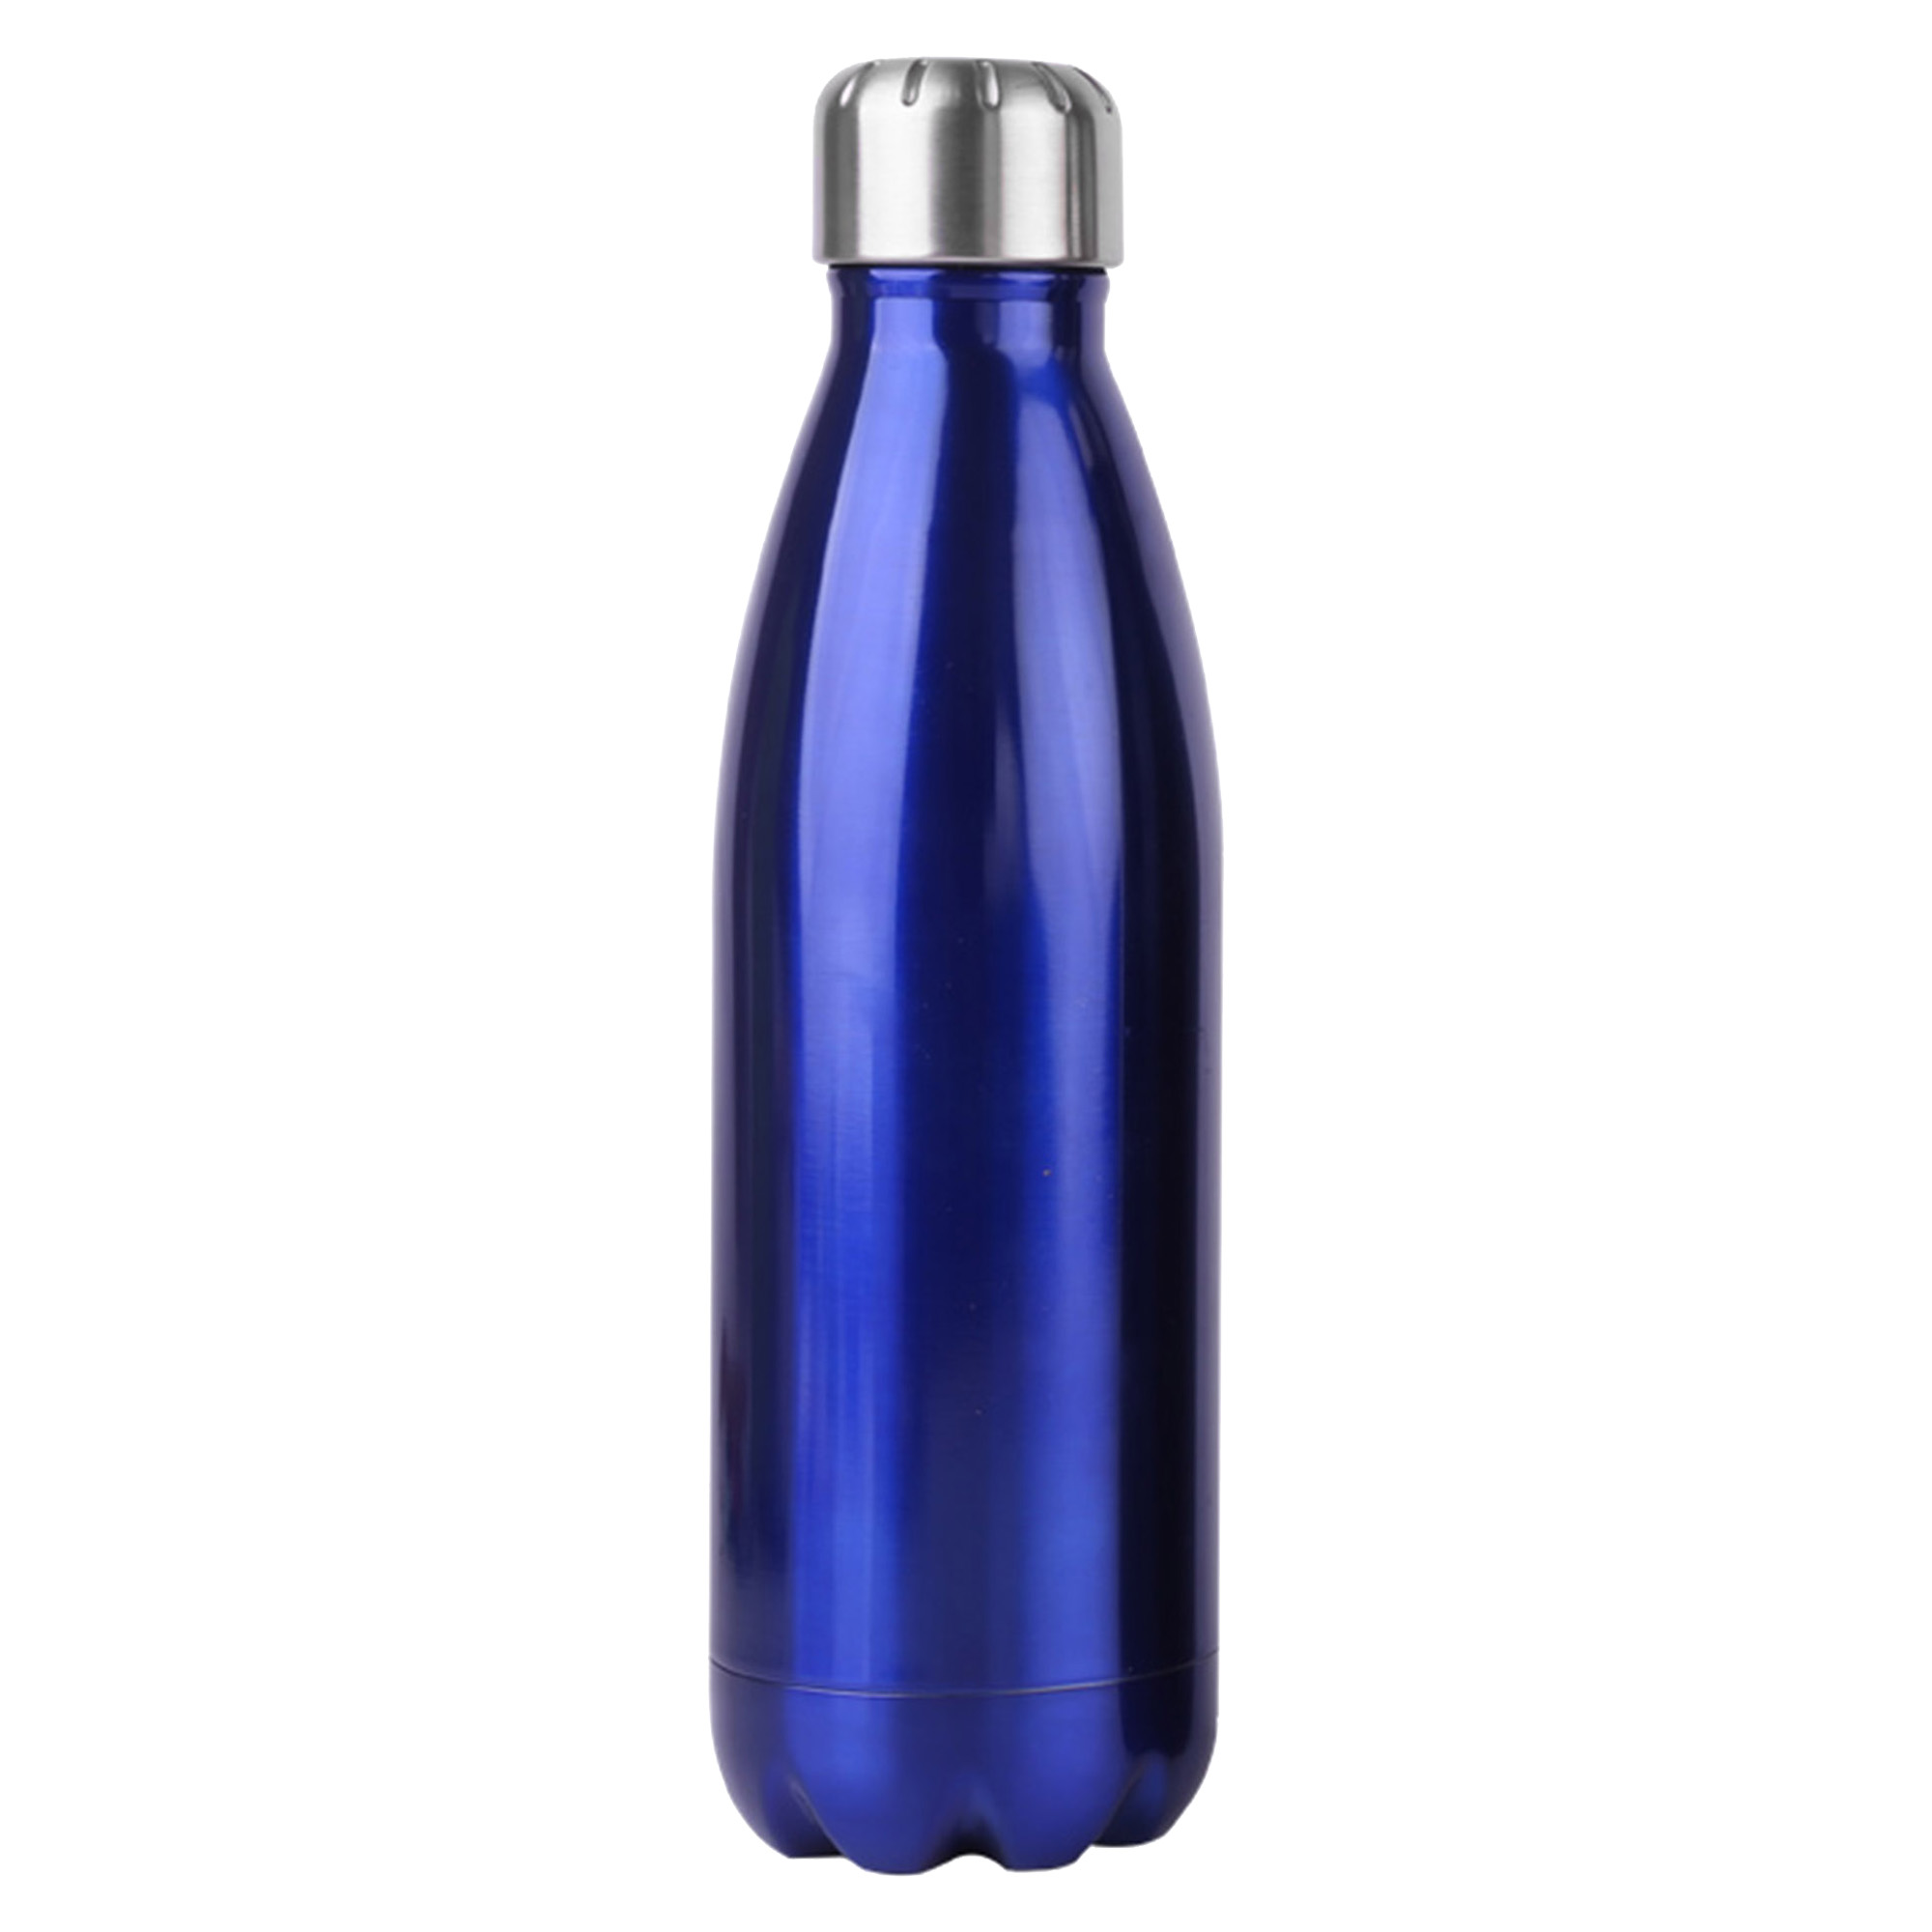 Bulk Personalised Komo Metal Blue Drink Bottle Online in Perth Australia